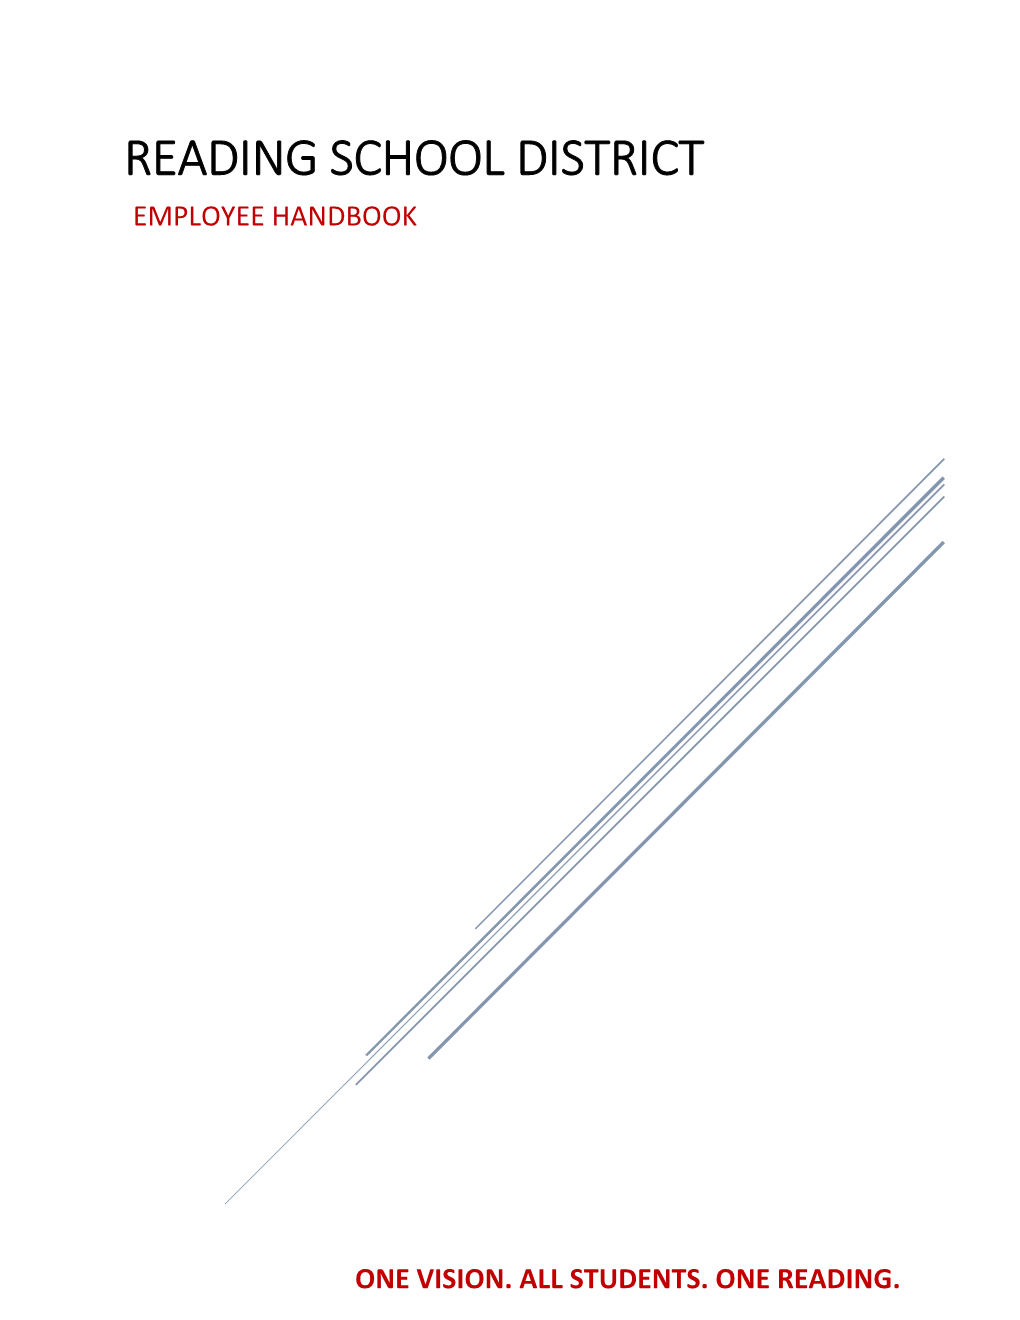 Reading School District Employee Handbook